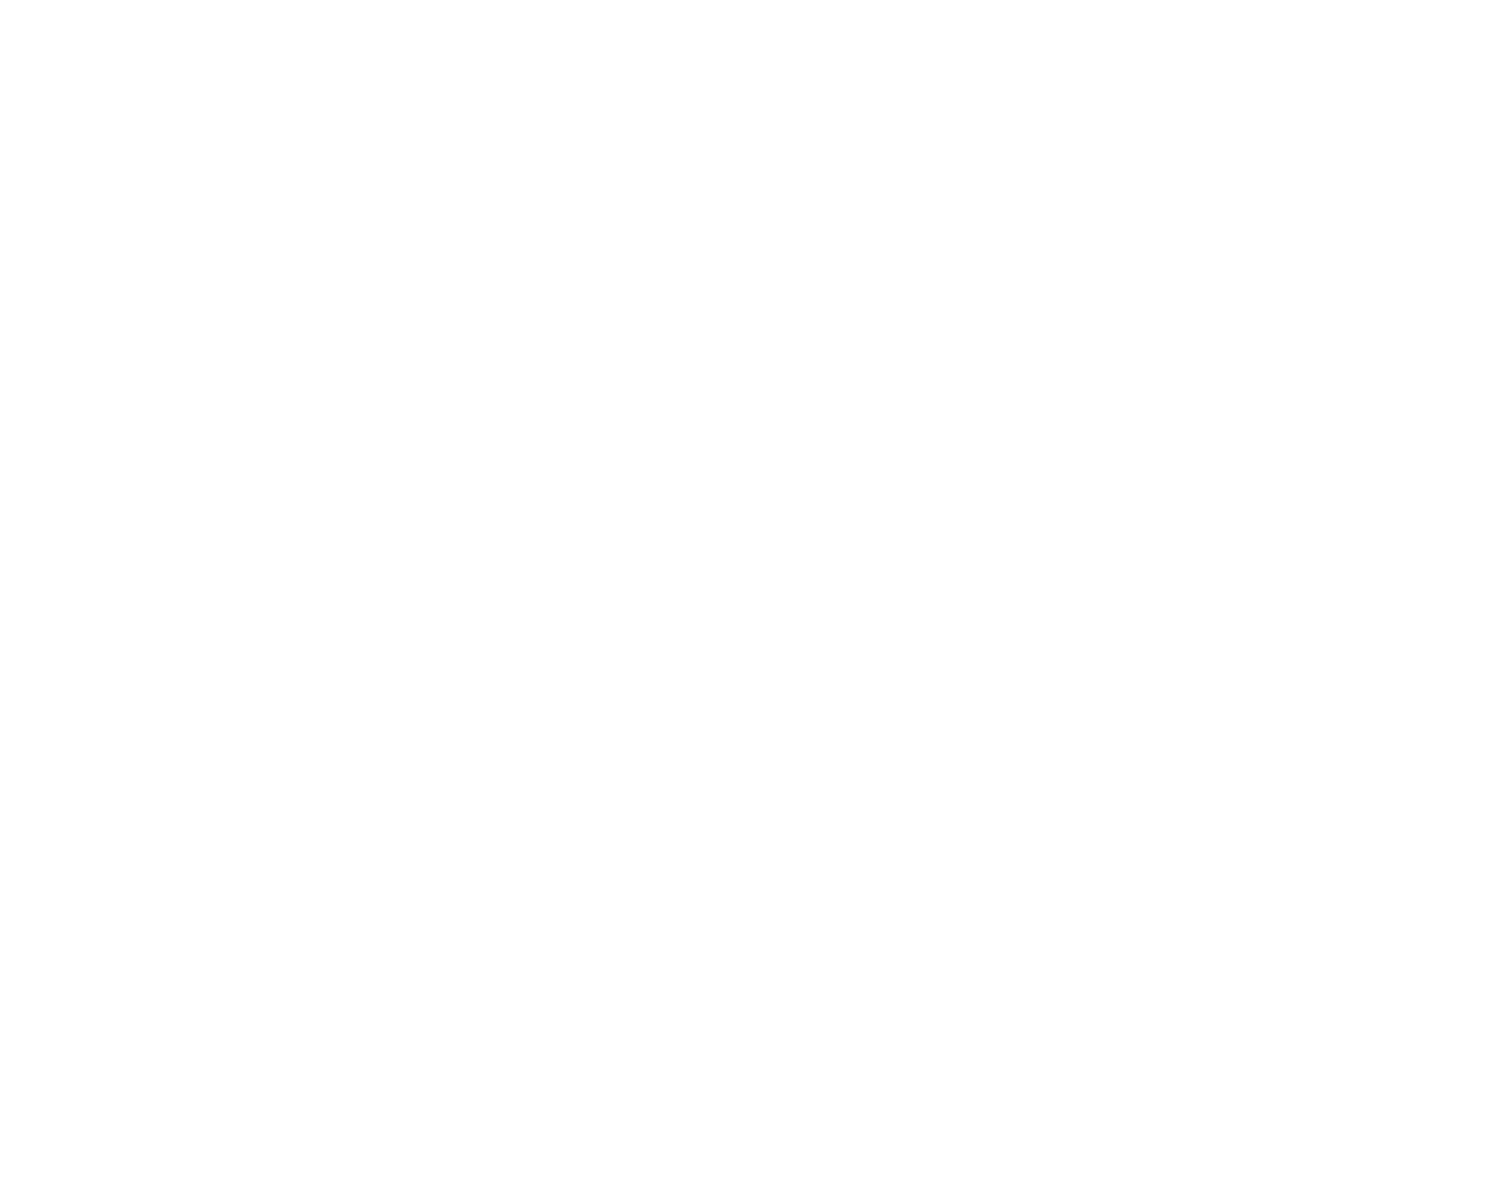 Neuberger Berman ETF Trust logo for dark backgrounds (transparent PNG)